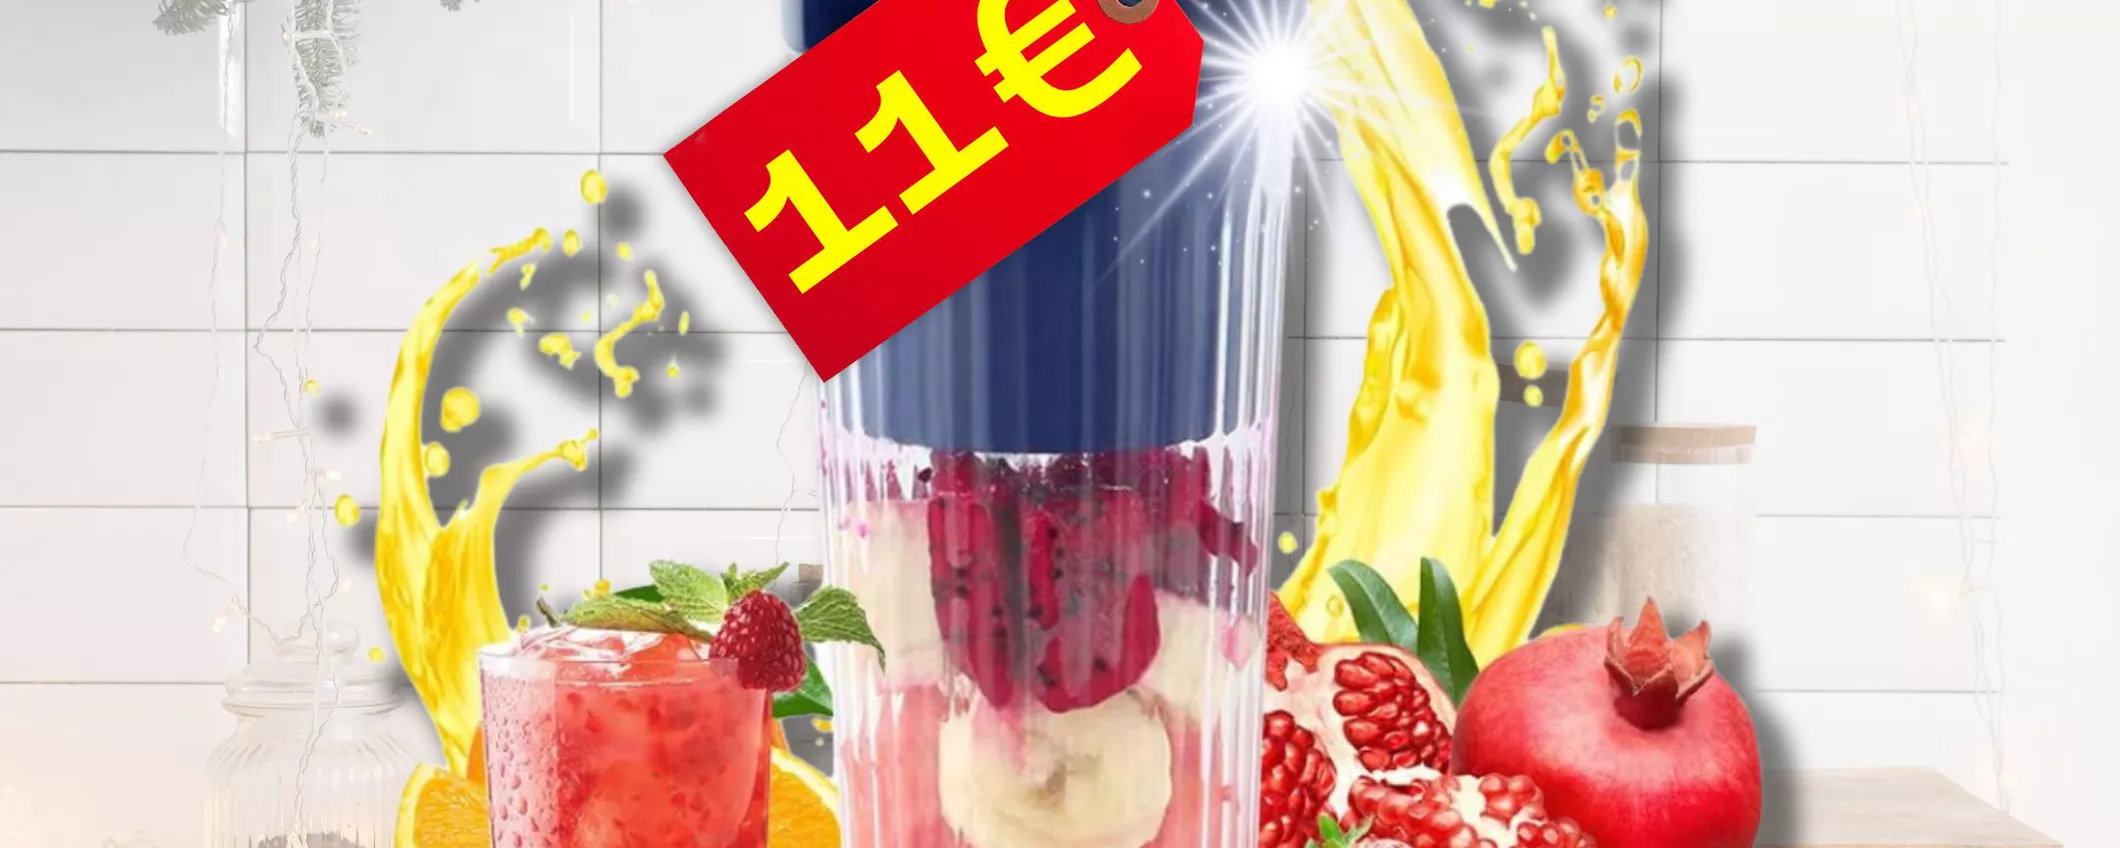 SOLO 11€ per il Frullatore Portatile: mangi bene ovunque ed è un super regalo!